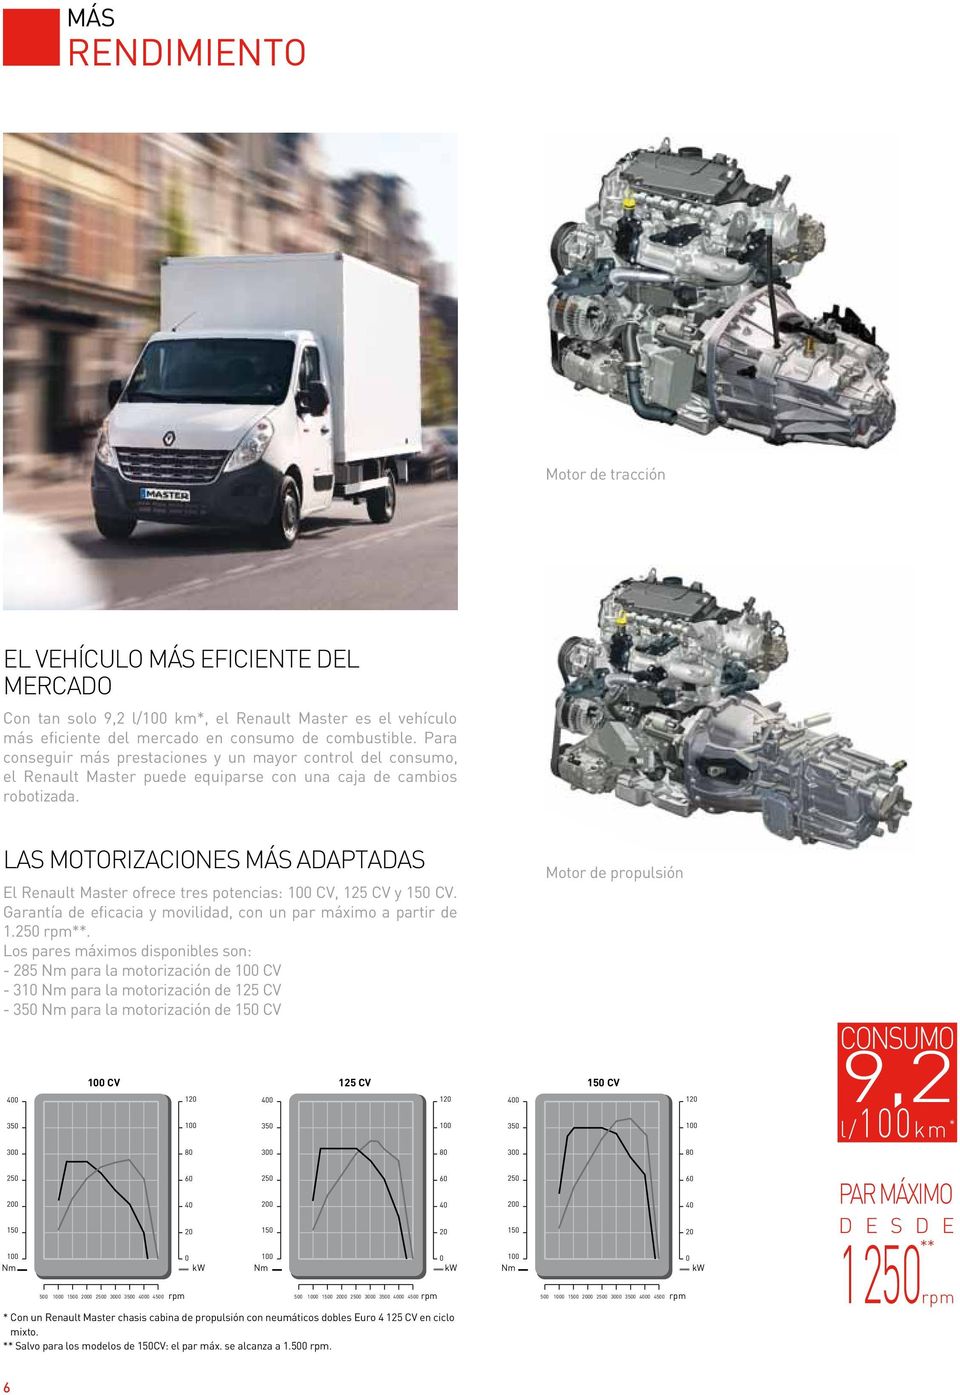 LAS MOTORIZACIONES MÁS ADAPTADAS El Renault Master ofrece tres potencias: 100 CV, 125 CV y 150 CV. Garantía de eficacia y movilidad, con un par máximo a partir de 1.250 rpm**.